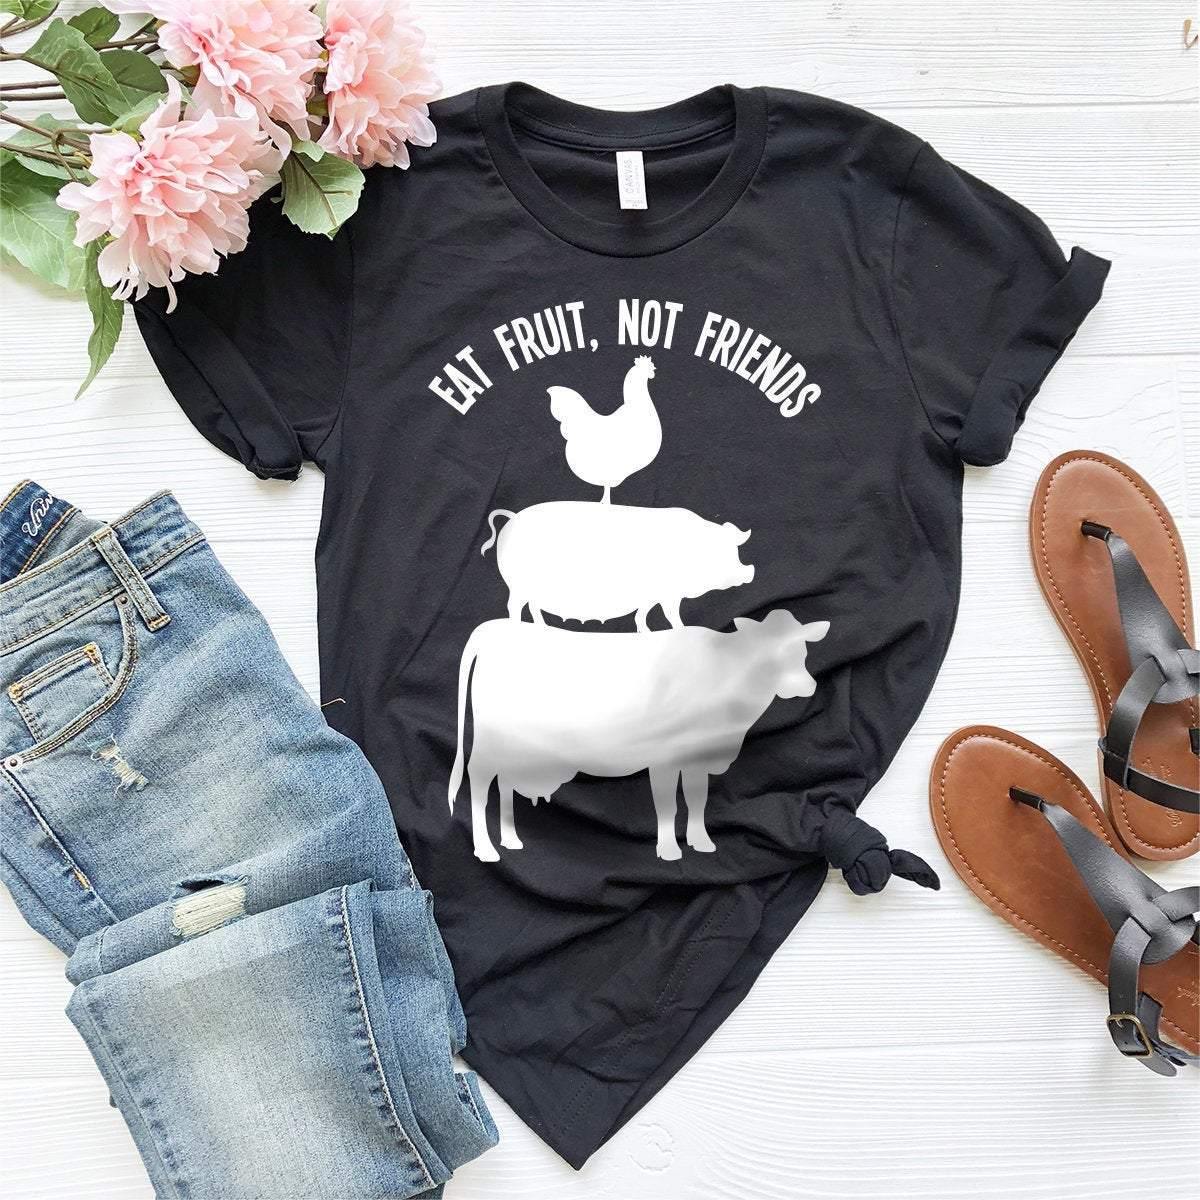 Vegan Shirt, Vegan T Shirt, Vegan Gift, Vegan T-Shirts, Veganism Shirt, Vegetarian Shirt, Funny Vegan Shirt, Eat Fruit Not Friends Shirt - Fastdeliverytees.com